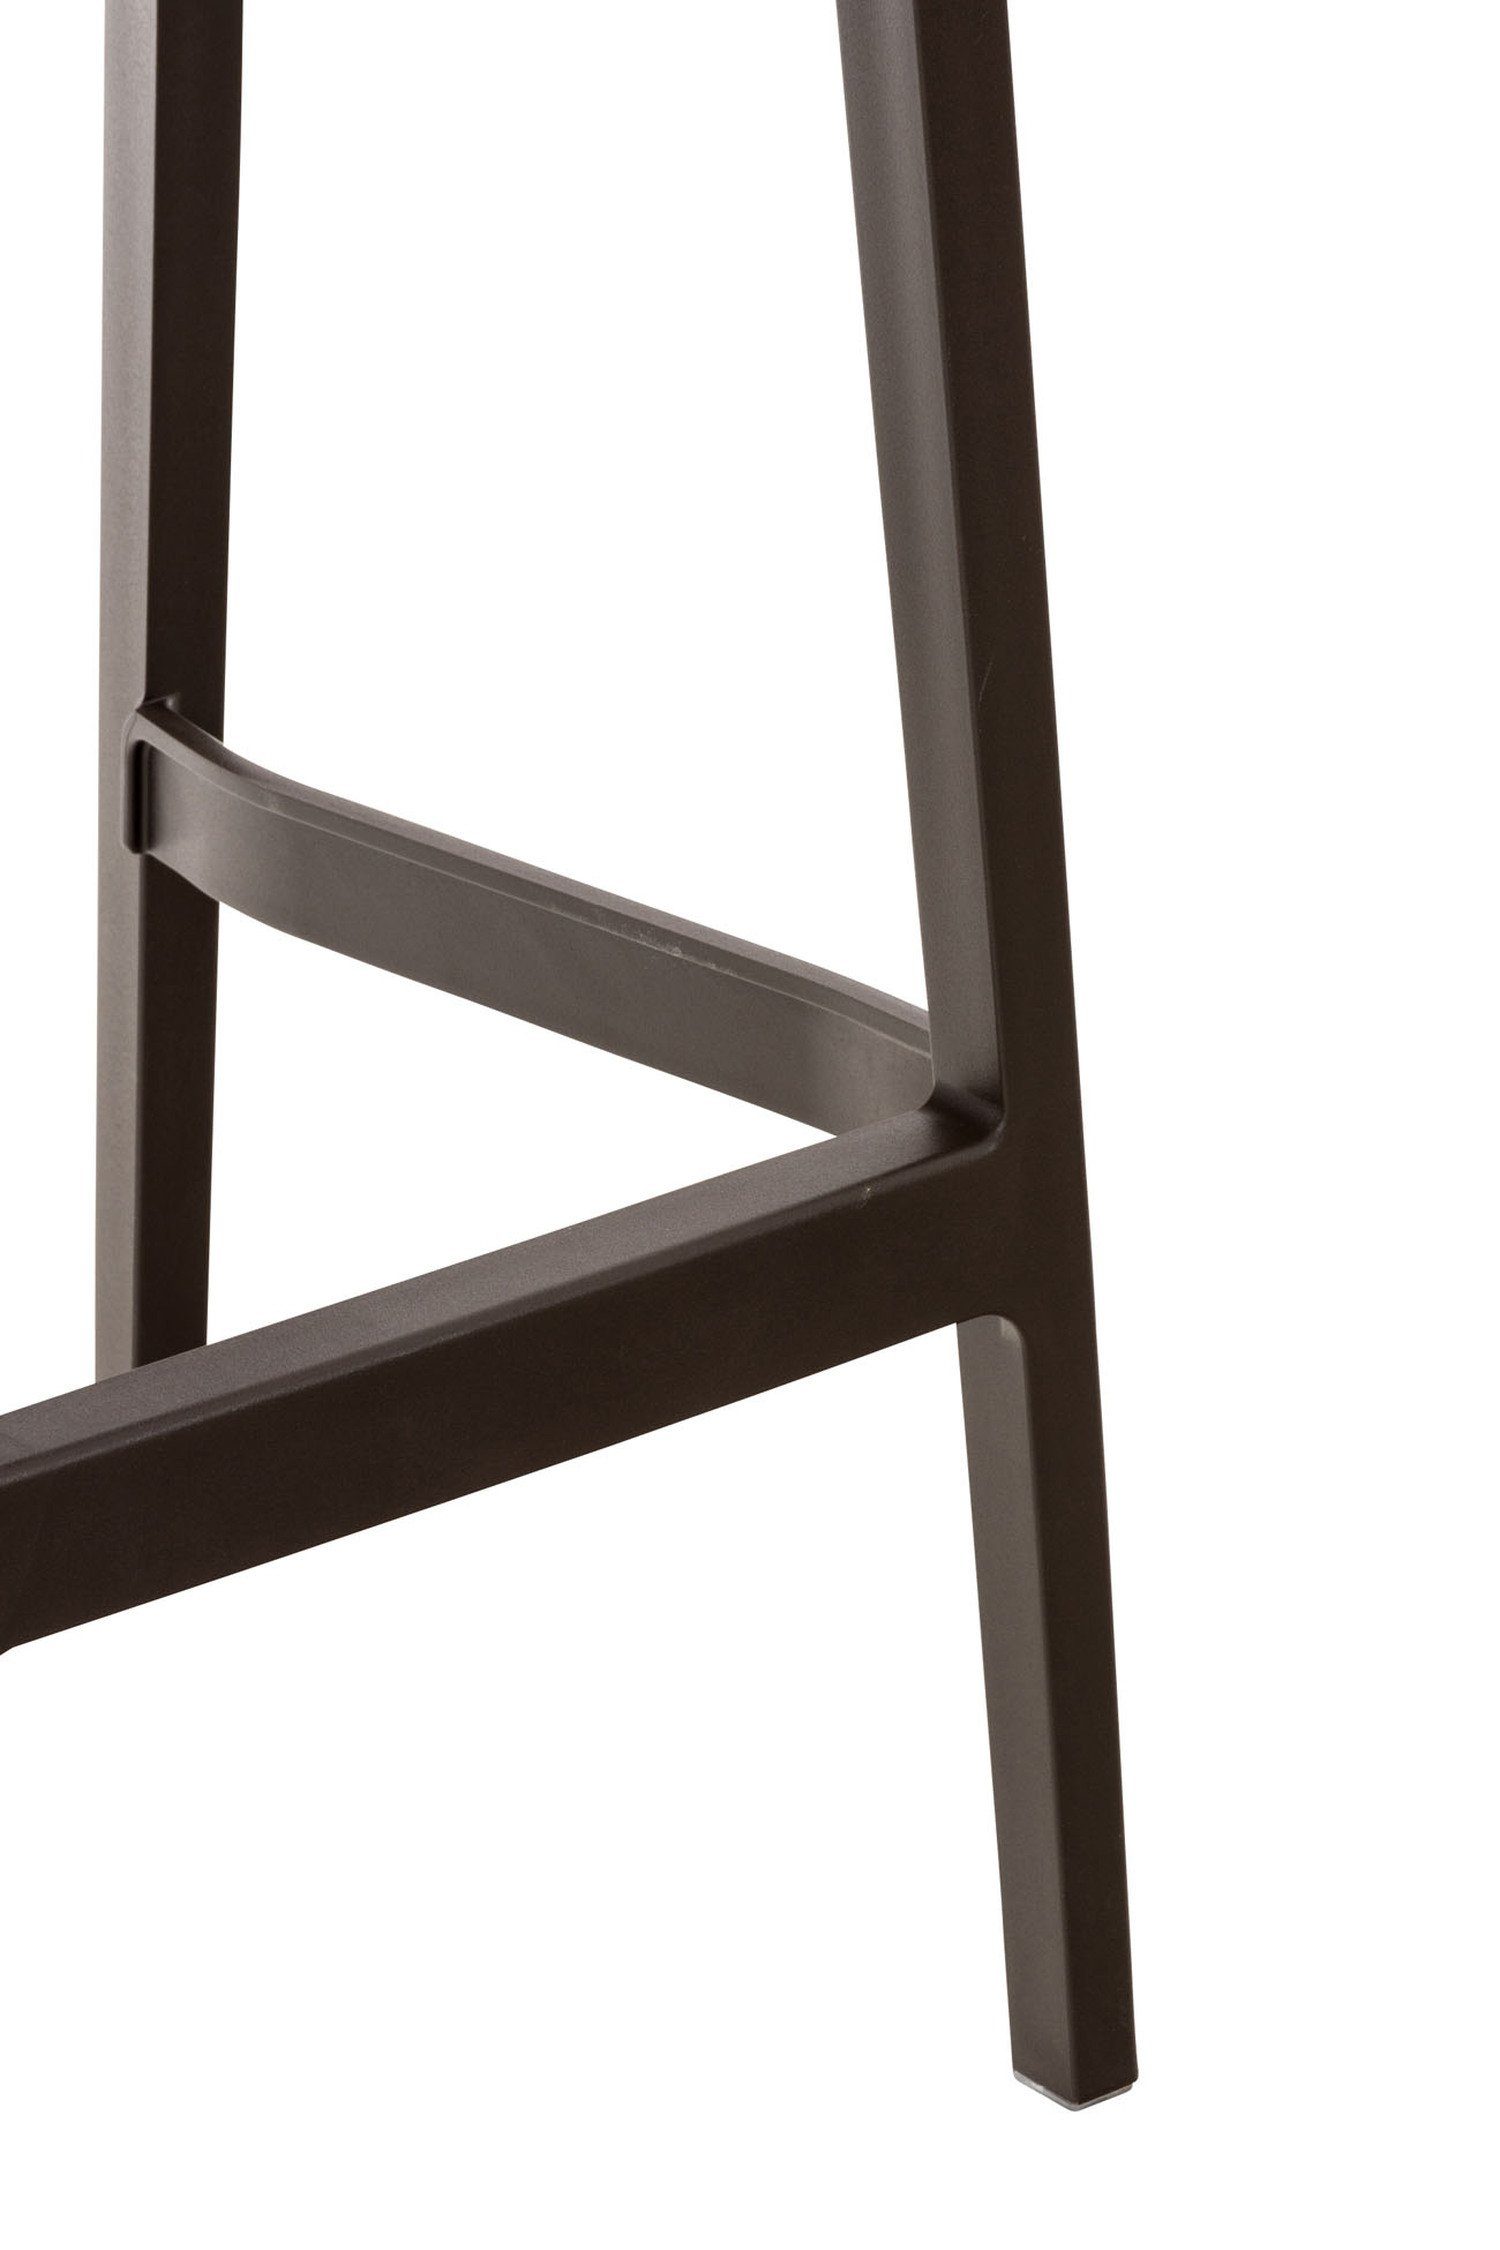 Kunststoff TPFLiving - Sitzfläche: Braun - Gestell Barhocker für Kunststoff Küche), angenehmer Ares Fußstütze Hocker & Theke (mit